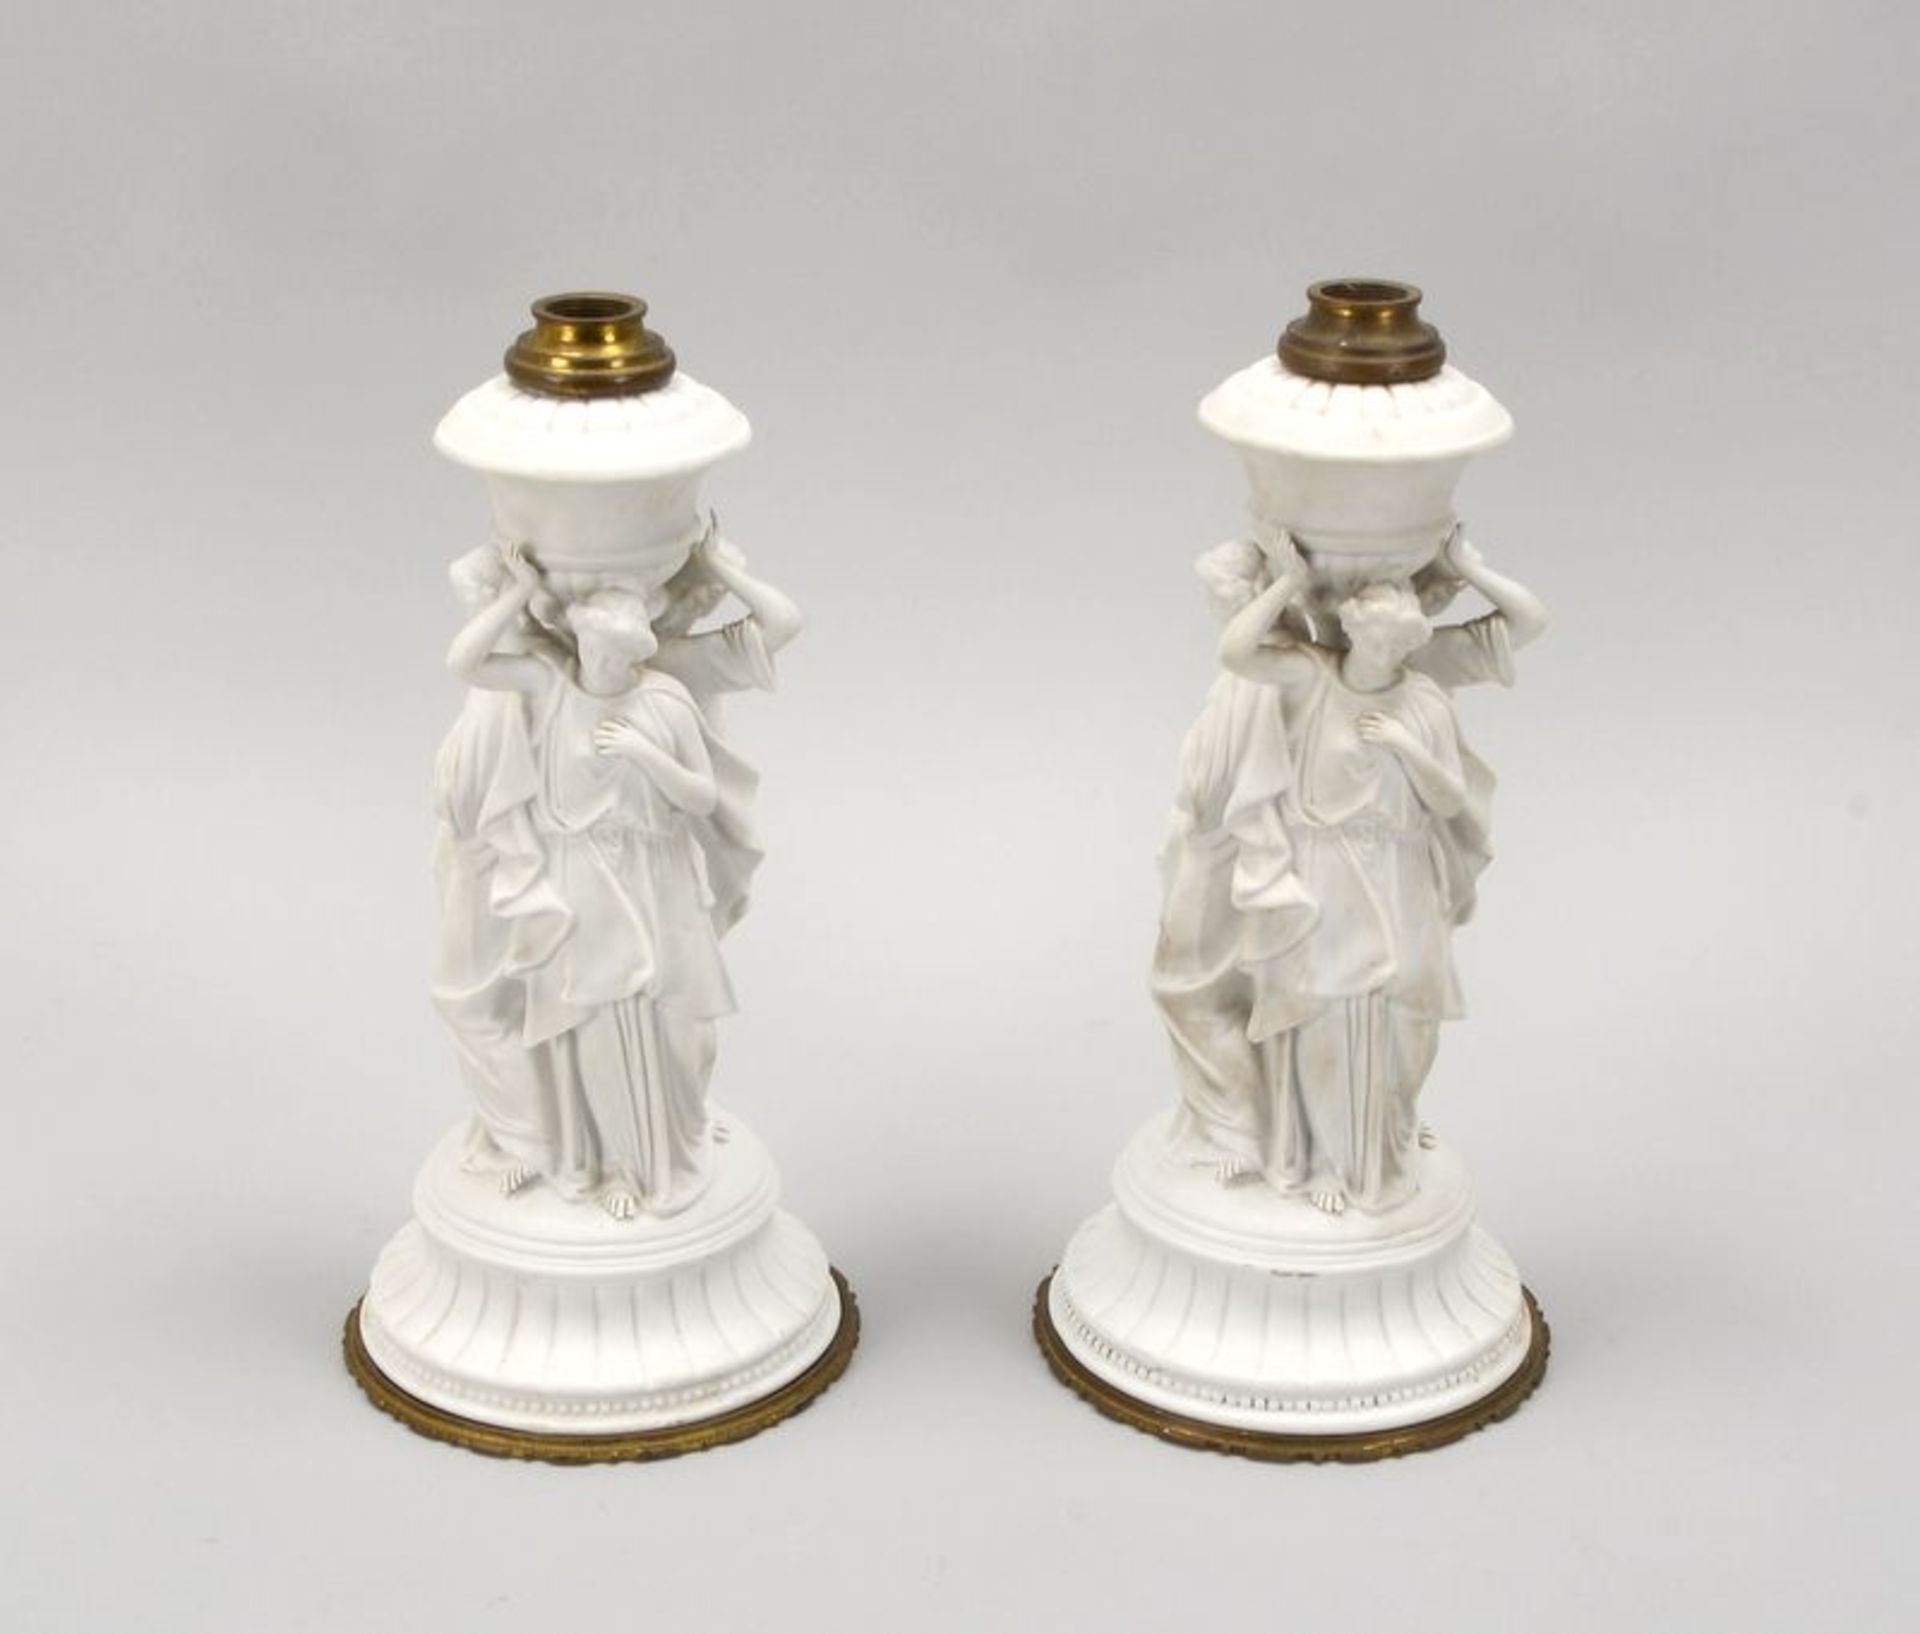 2 Biskuitporzellanfiguren, oben mit Metallmontierung (mit offenem Innengewinde - evtl. als Kerzenleu - Bild 2 aus 2